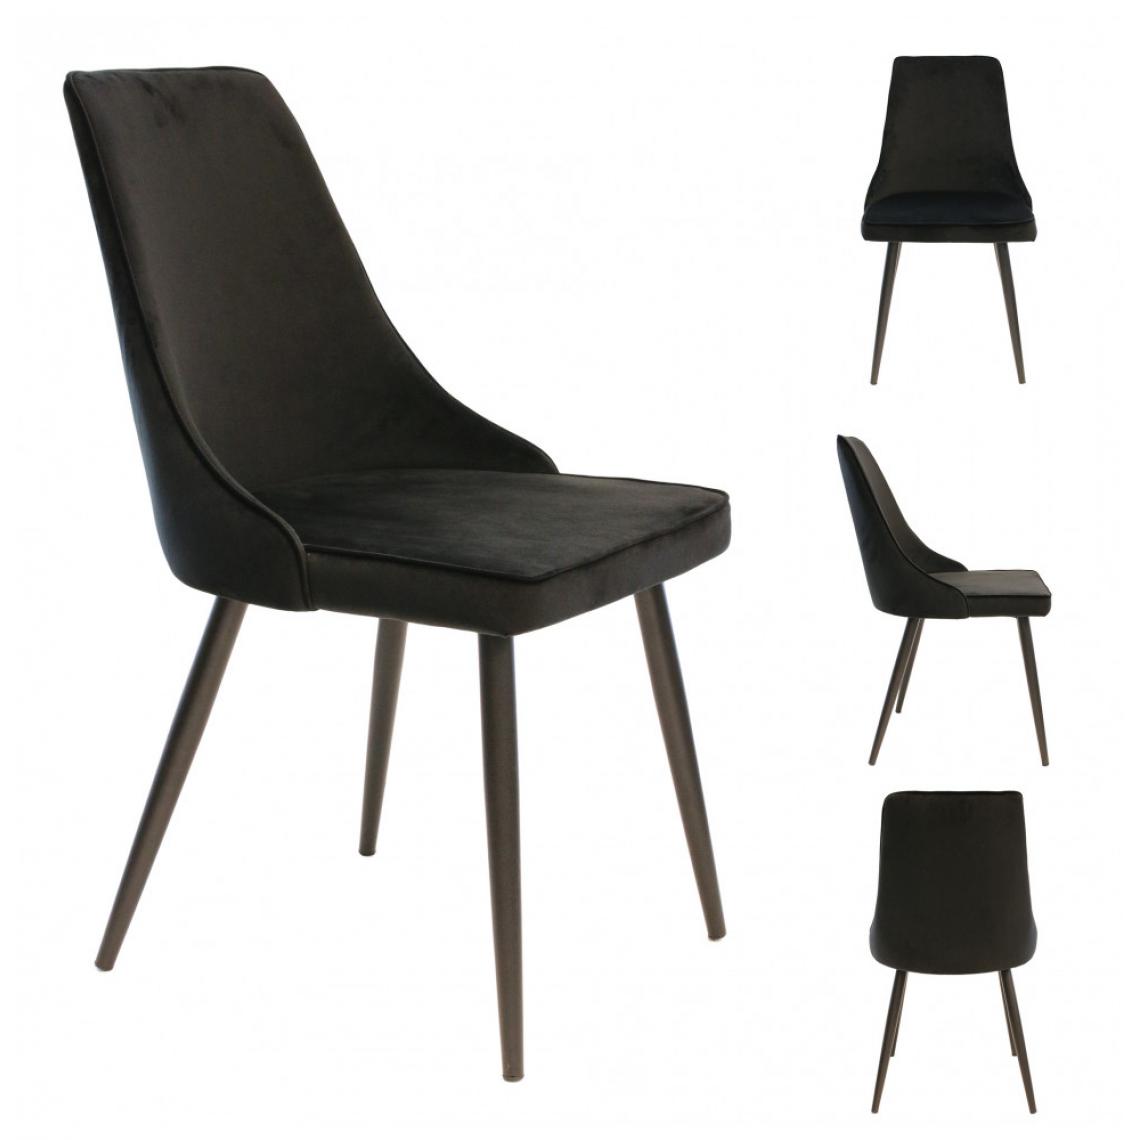 Ac-Deco - Chaise de table en velours - L 46 cm x P 59 cm x H 86 cm - Holm - Noir - Chaises